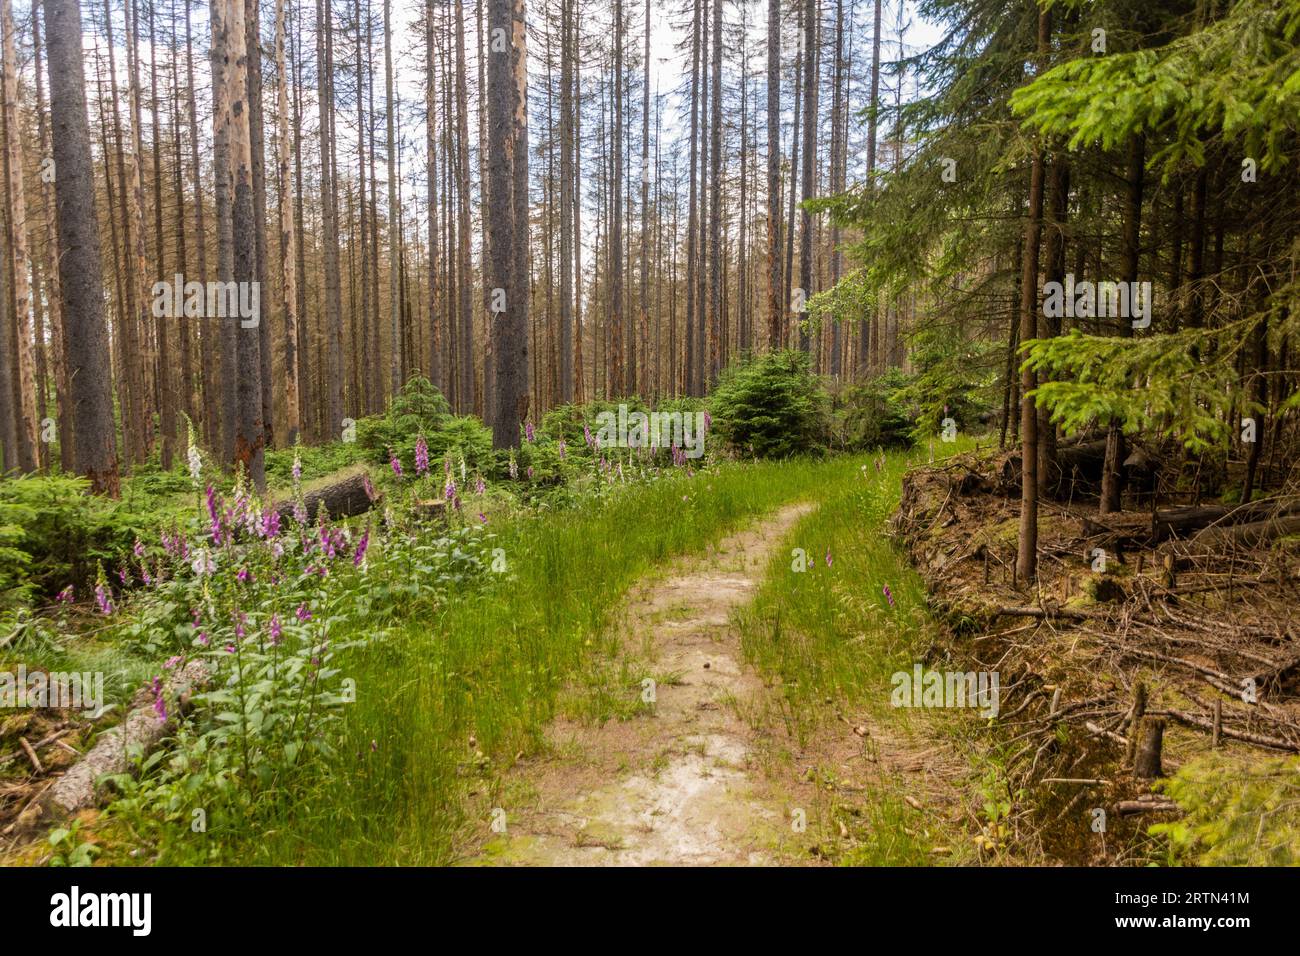 Forest in Bohemian Switzerland damaged by European spruce bark beetle, Czech Republic Stock Photo